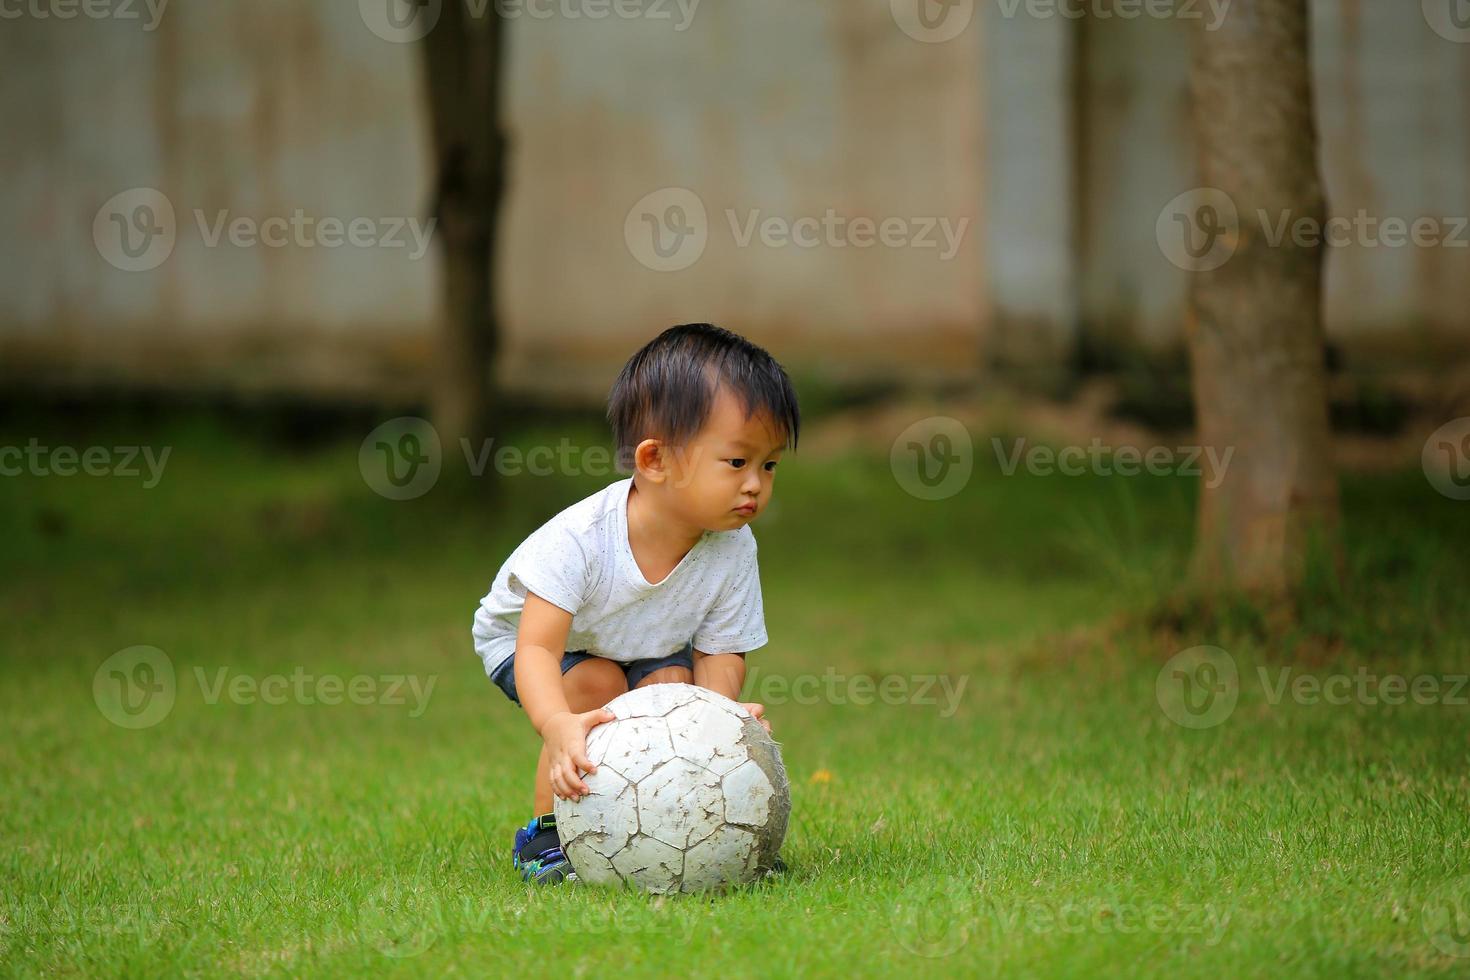 ragazzo asiatico che gioca a calcio al parco. bambino con la palla nel campo in erba. foto